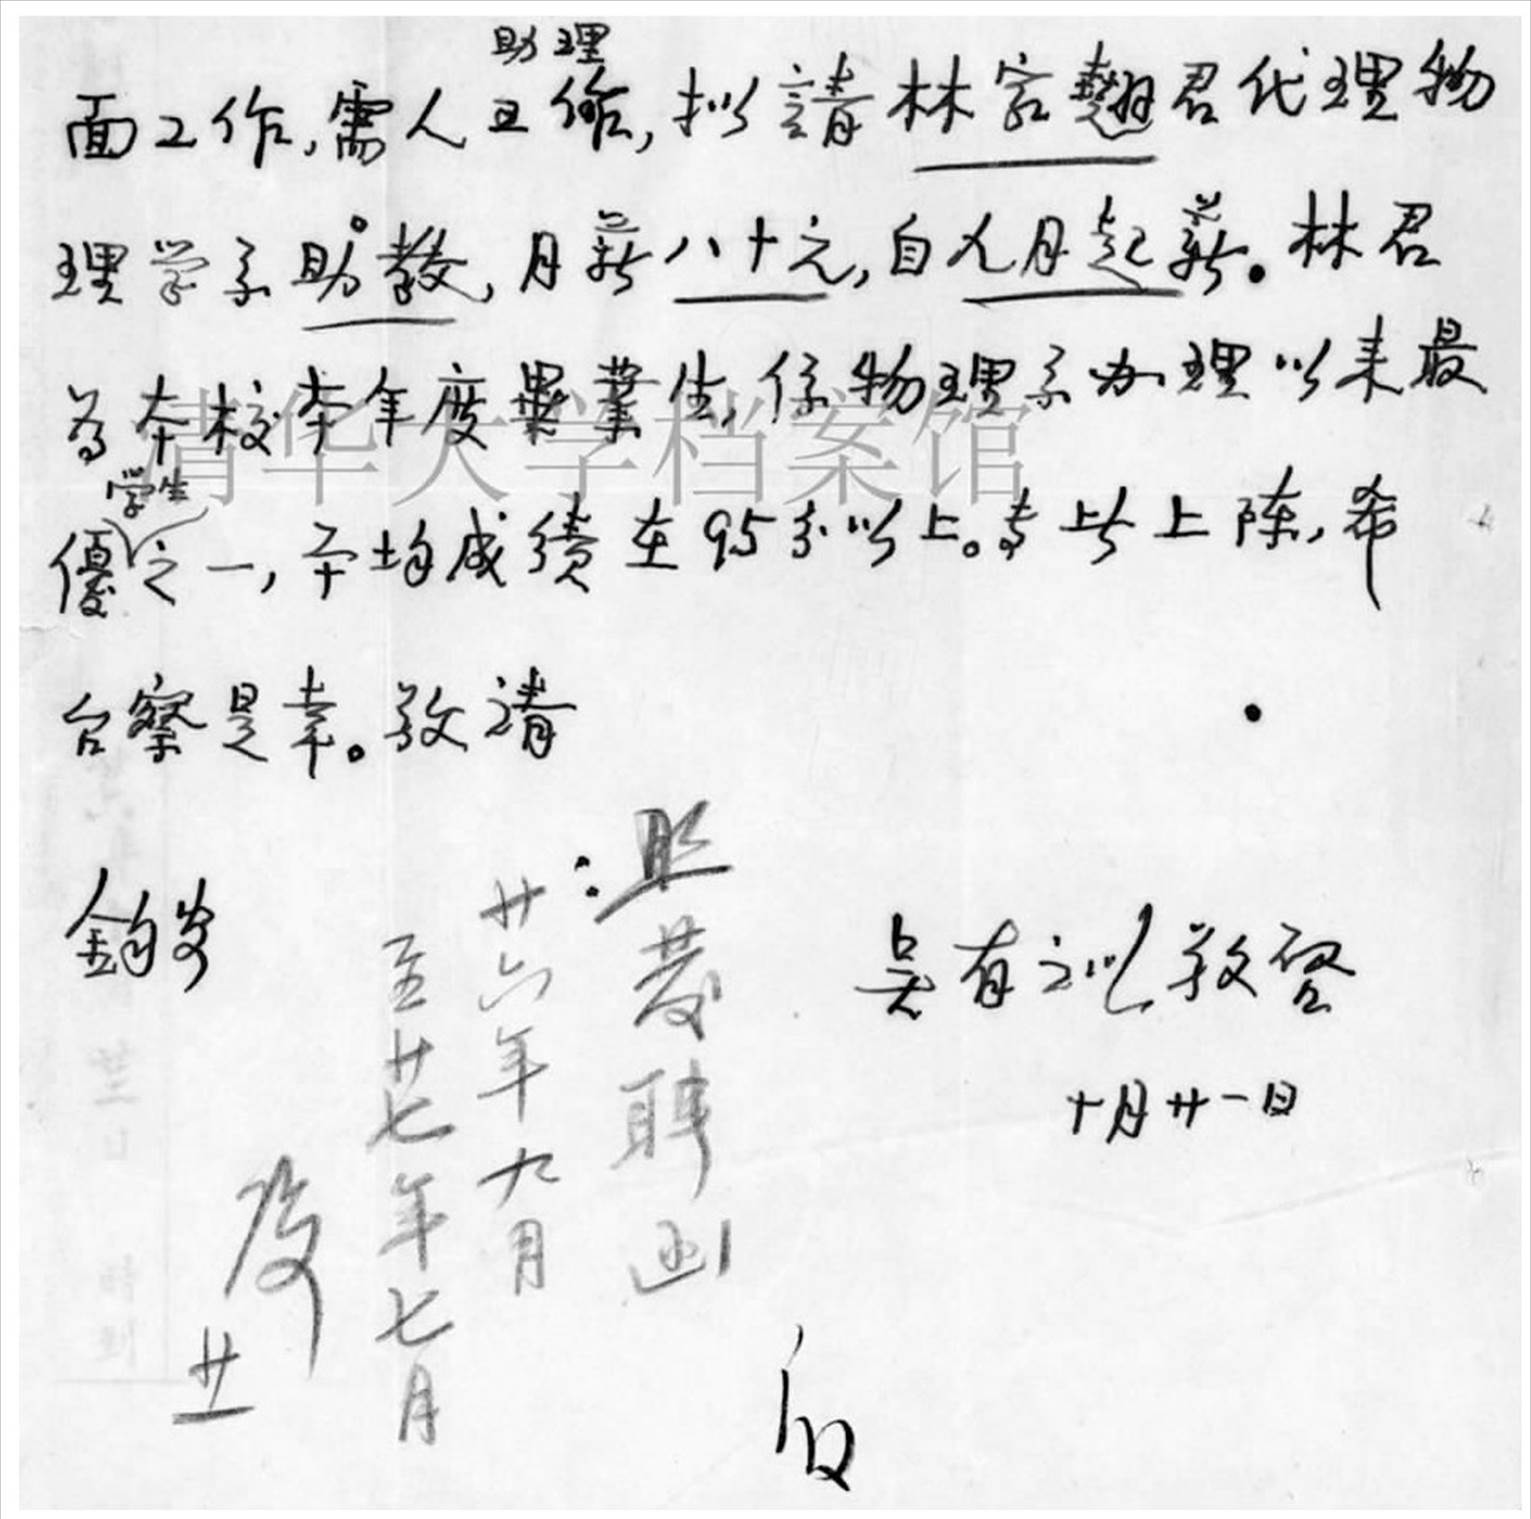 图2.吴有训致梅贻琦信(1937年10月21日)